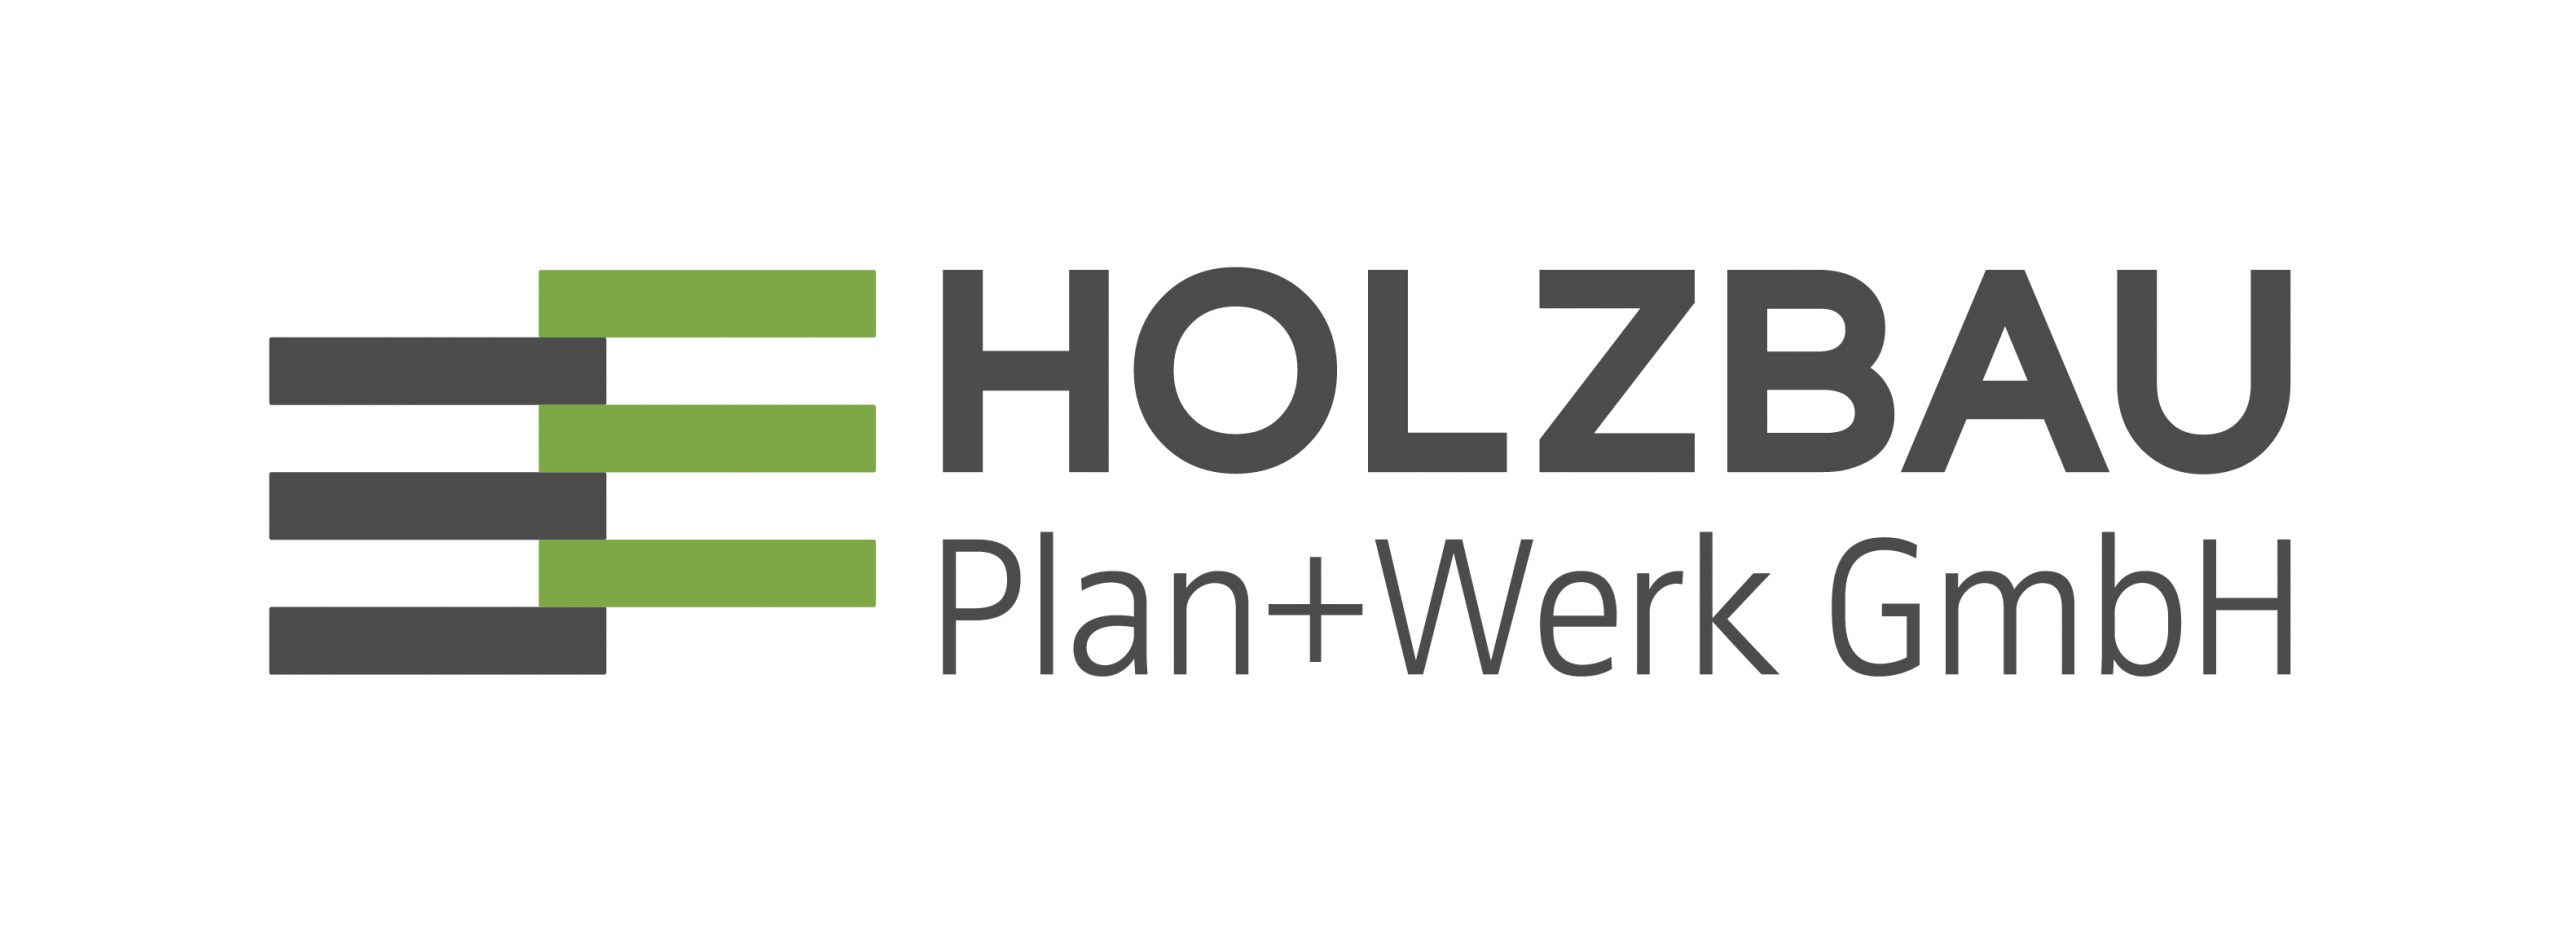 Holzbau Plan+Werk GmbH